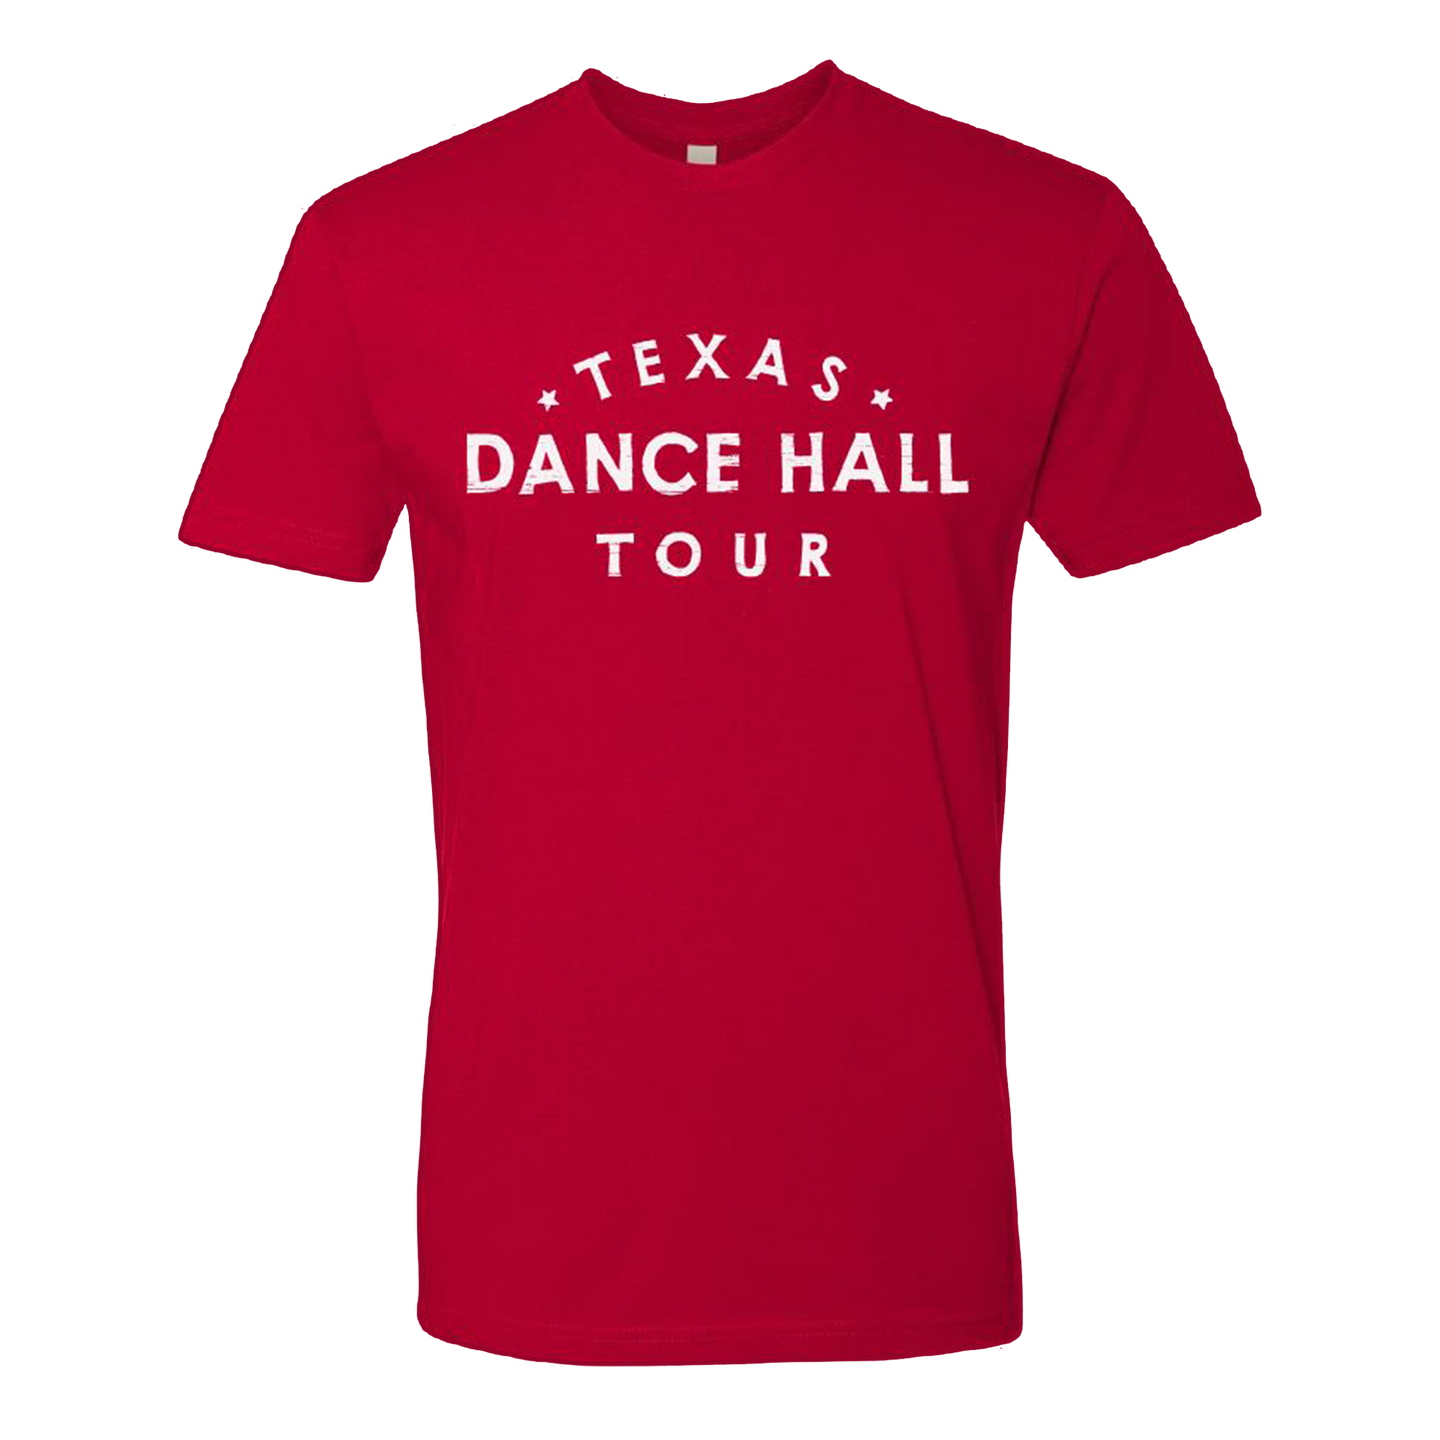 Texas Dance Hall Tour 2019 Tee